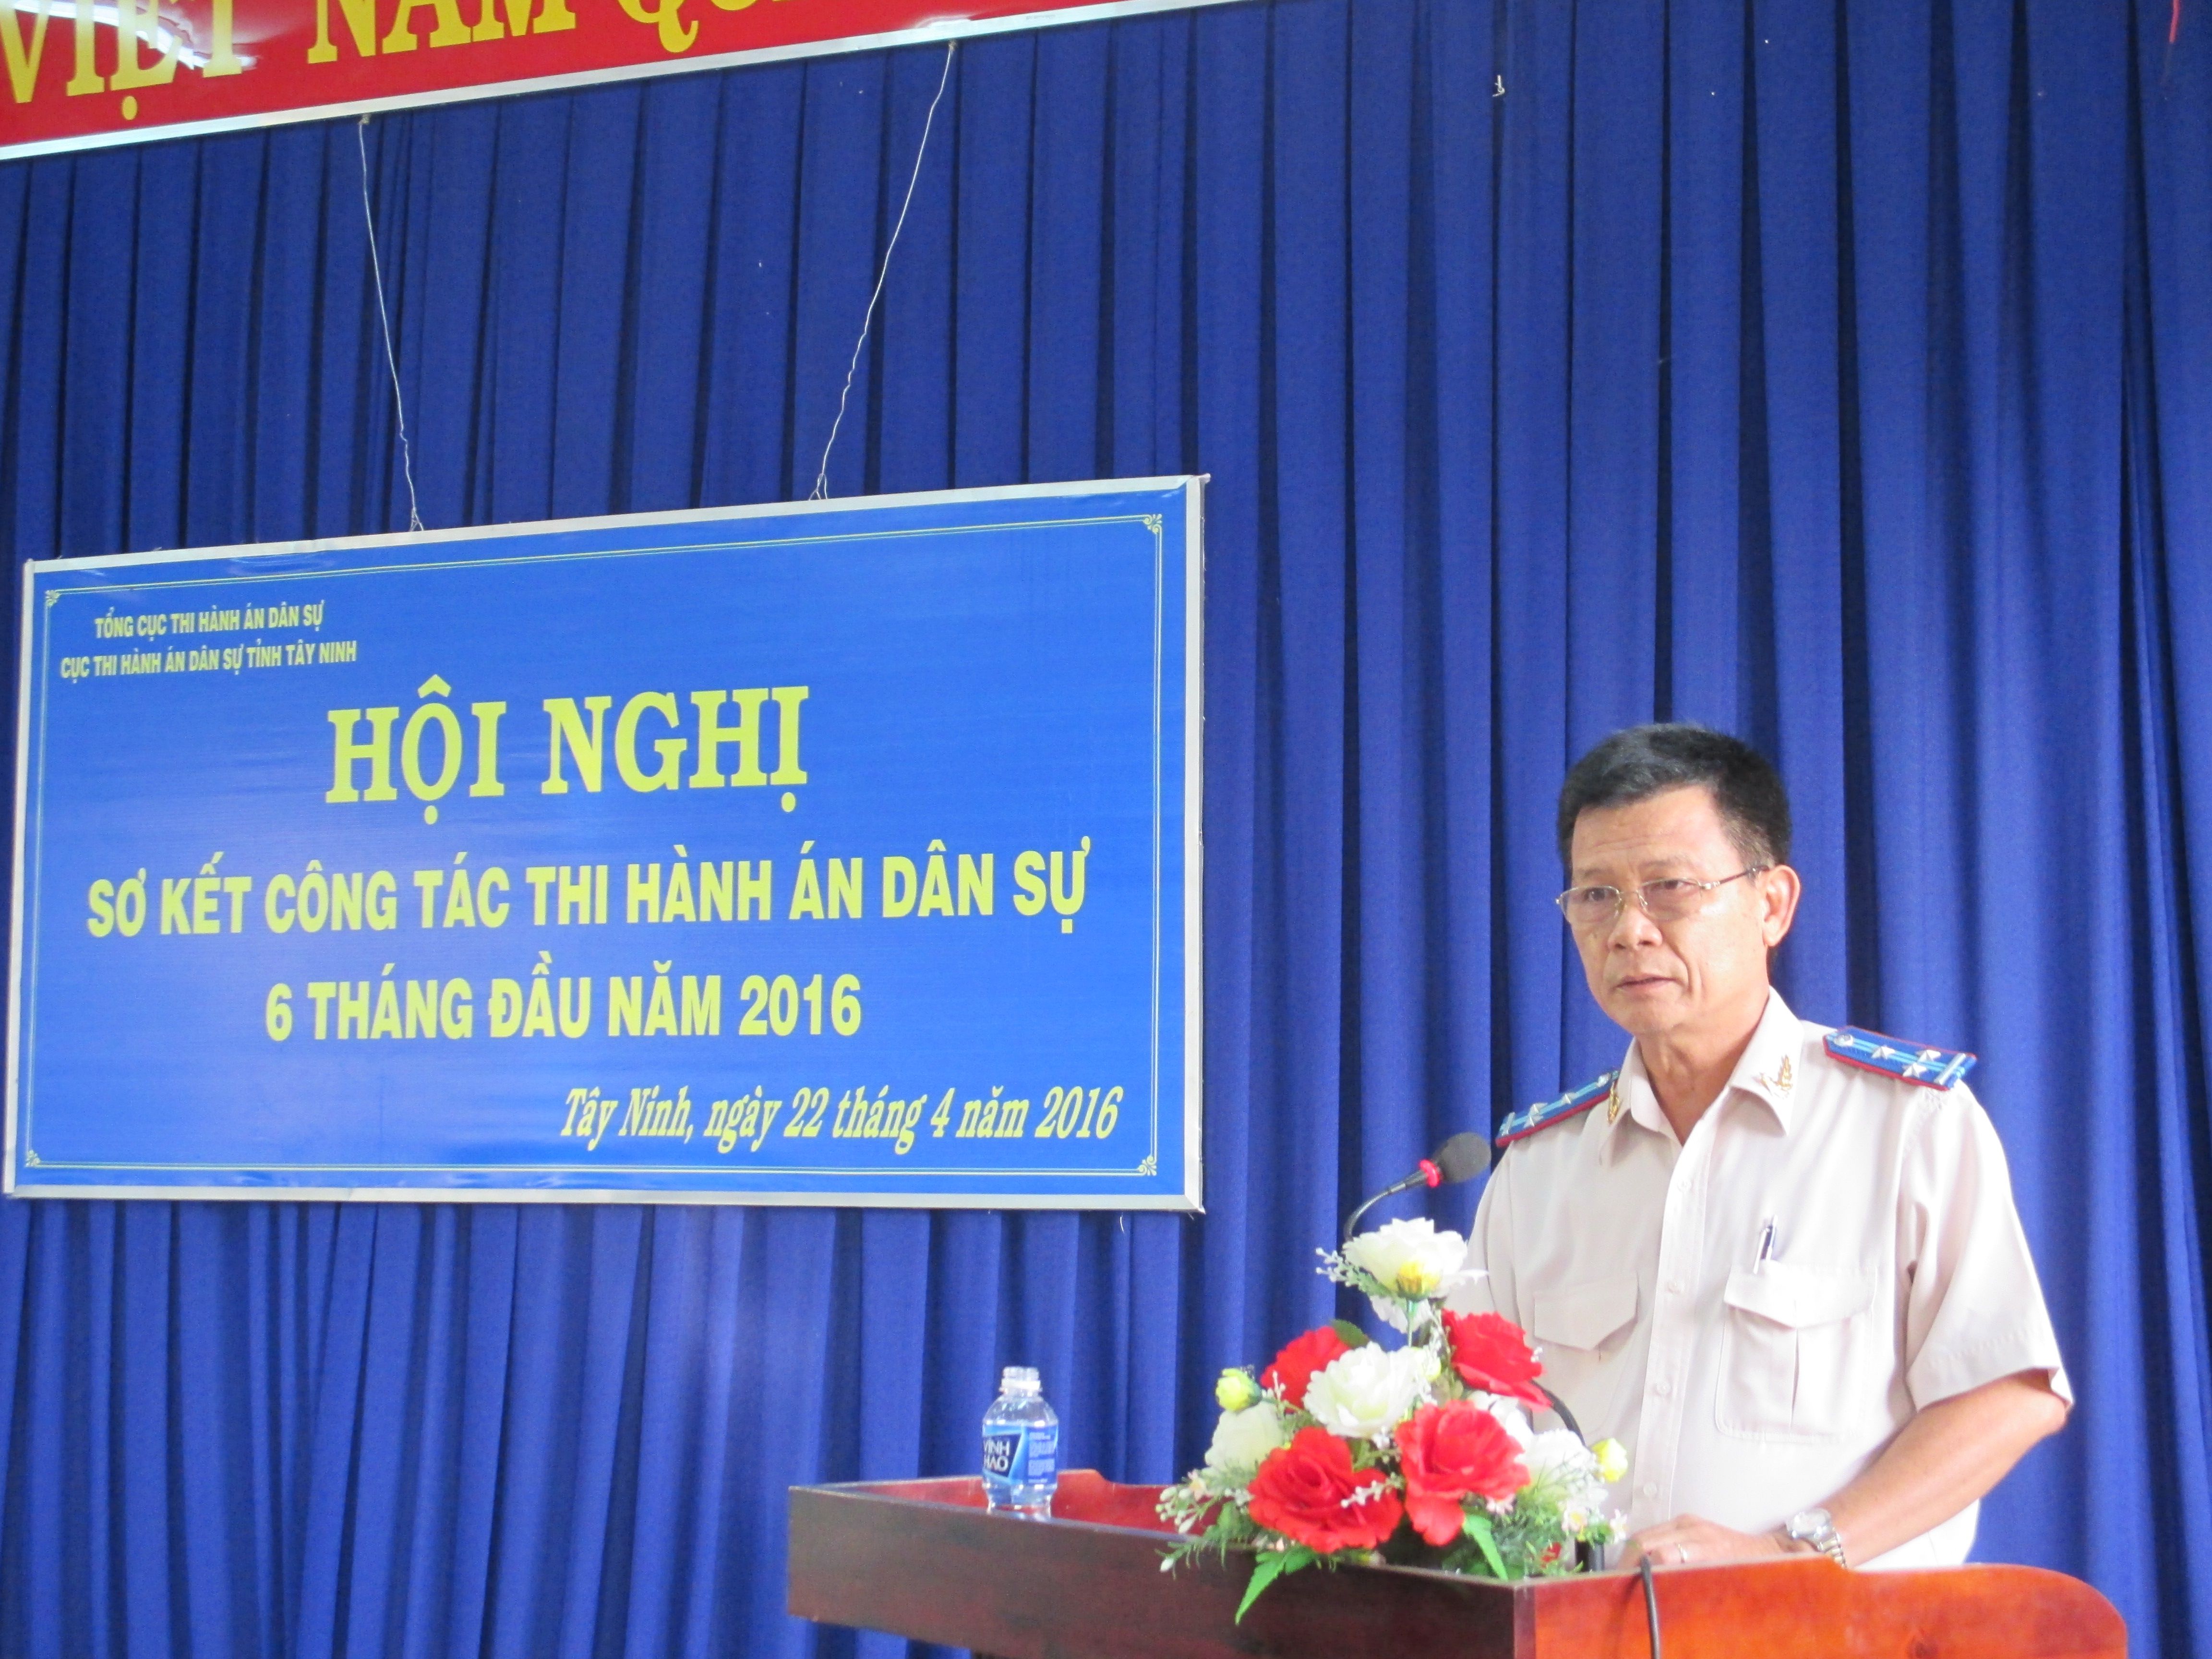 Tây Ninh: Sơ kết công tác thi hành án dân sự 6 tháng đầu năm và triển khai nhiệm vụ công tác thi hành án dân sự 6 tháng cuối năm 2016